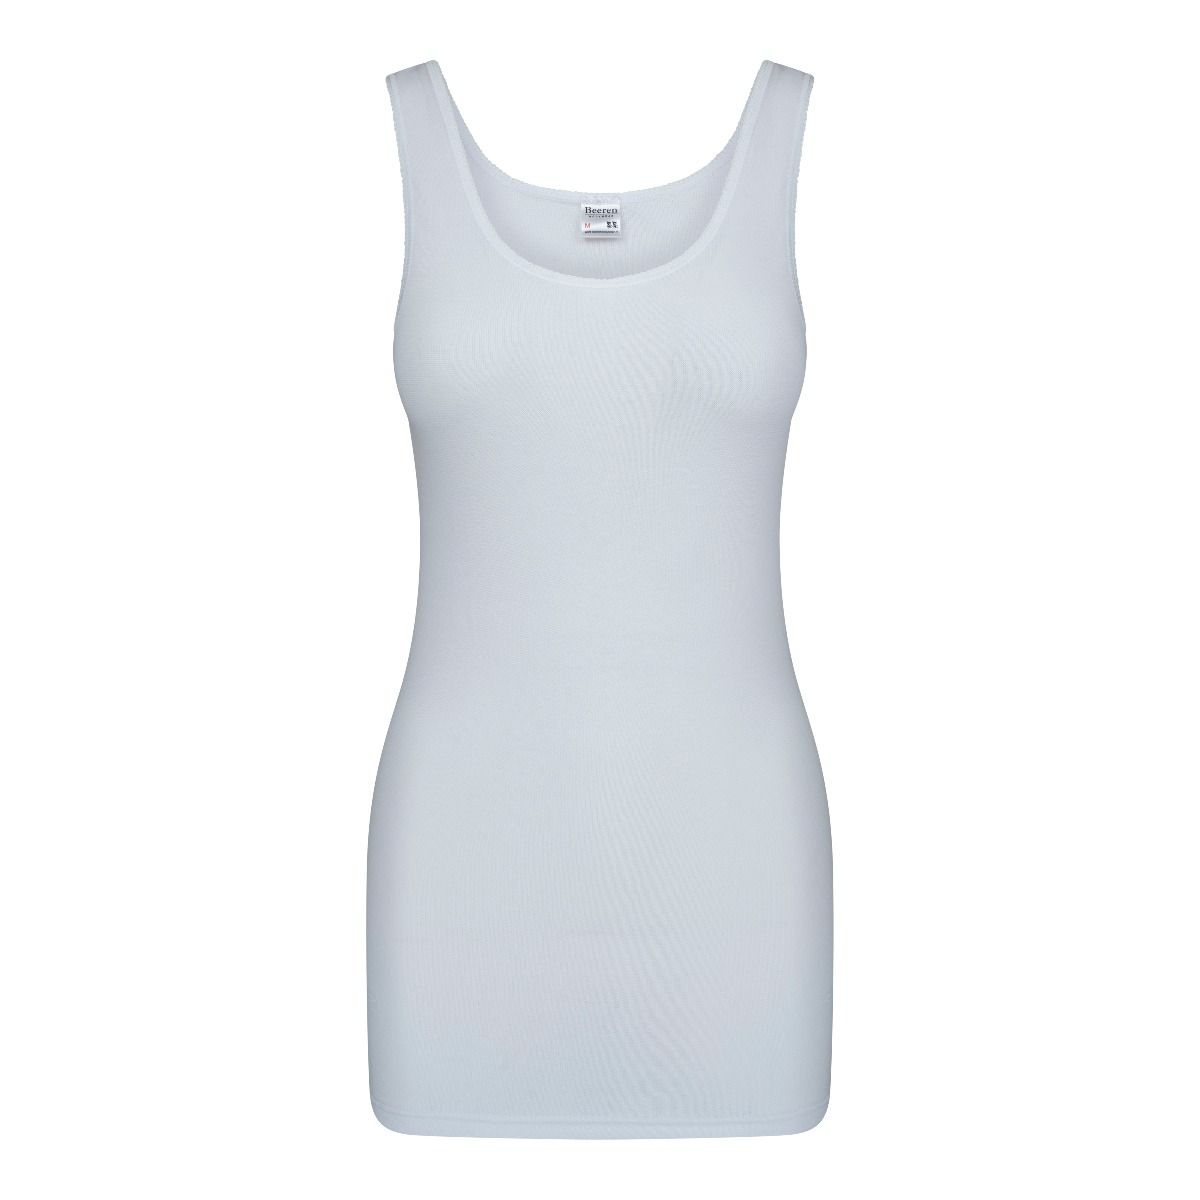 Speeltoestellen partner Kolonel Dames hemd briljant wit-Beeren dames hemden online kopen.